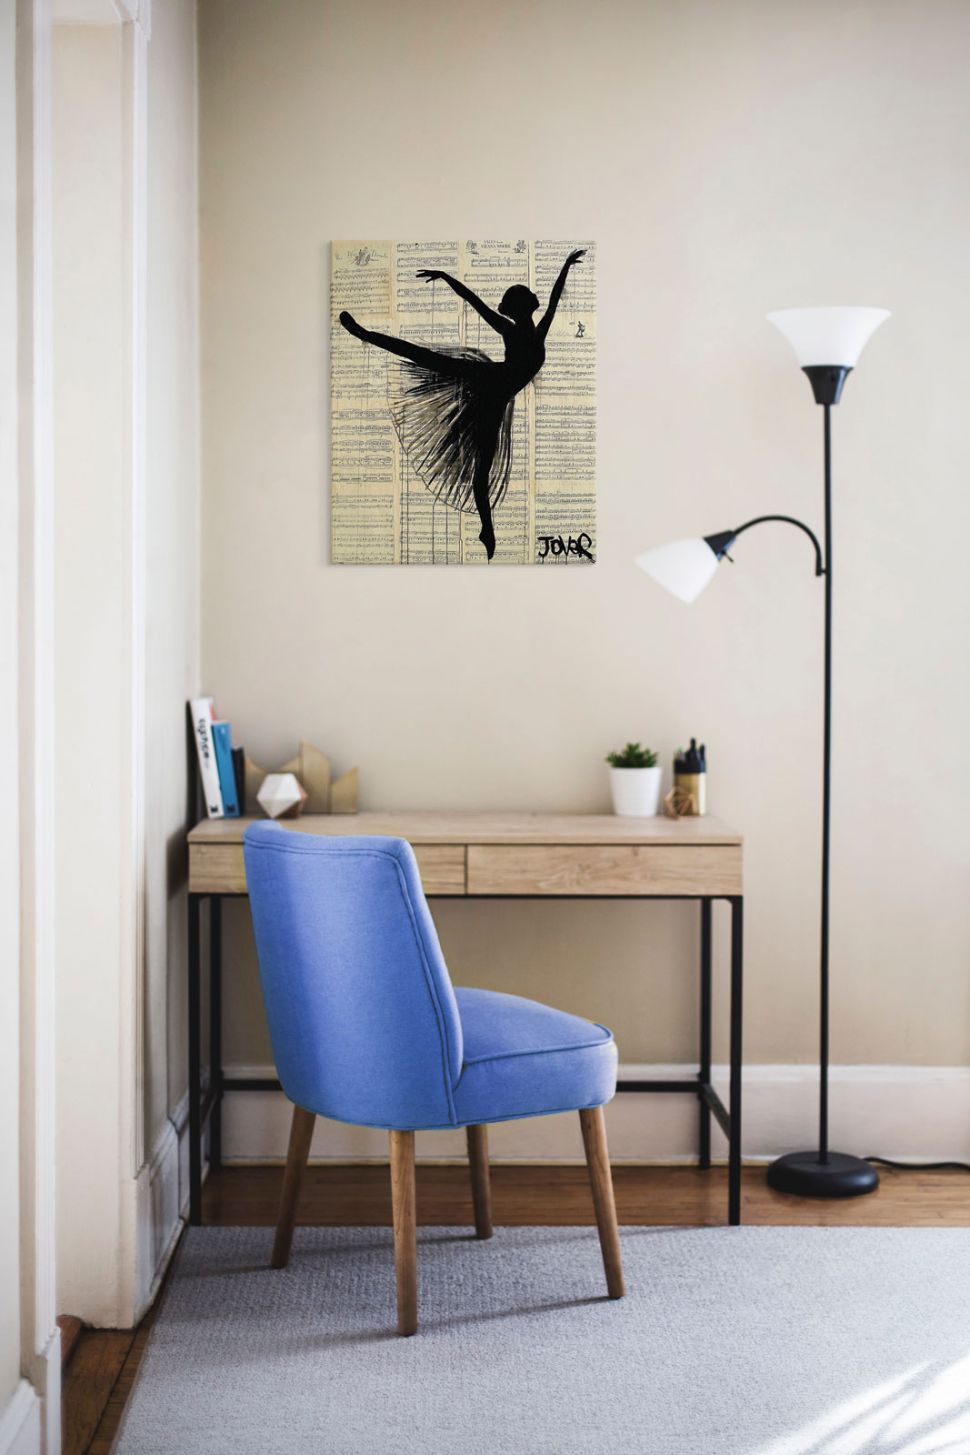 Obraz na płótnie z baletnicą powieszony w pokoju nad drewnianym biurkiem przy którym stoi fioletowe krzesło